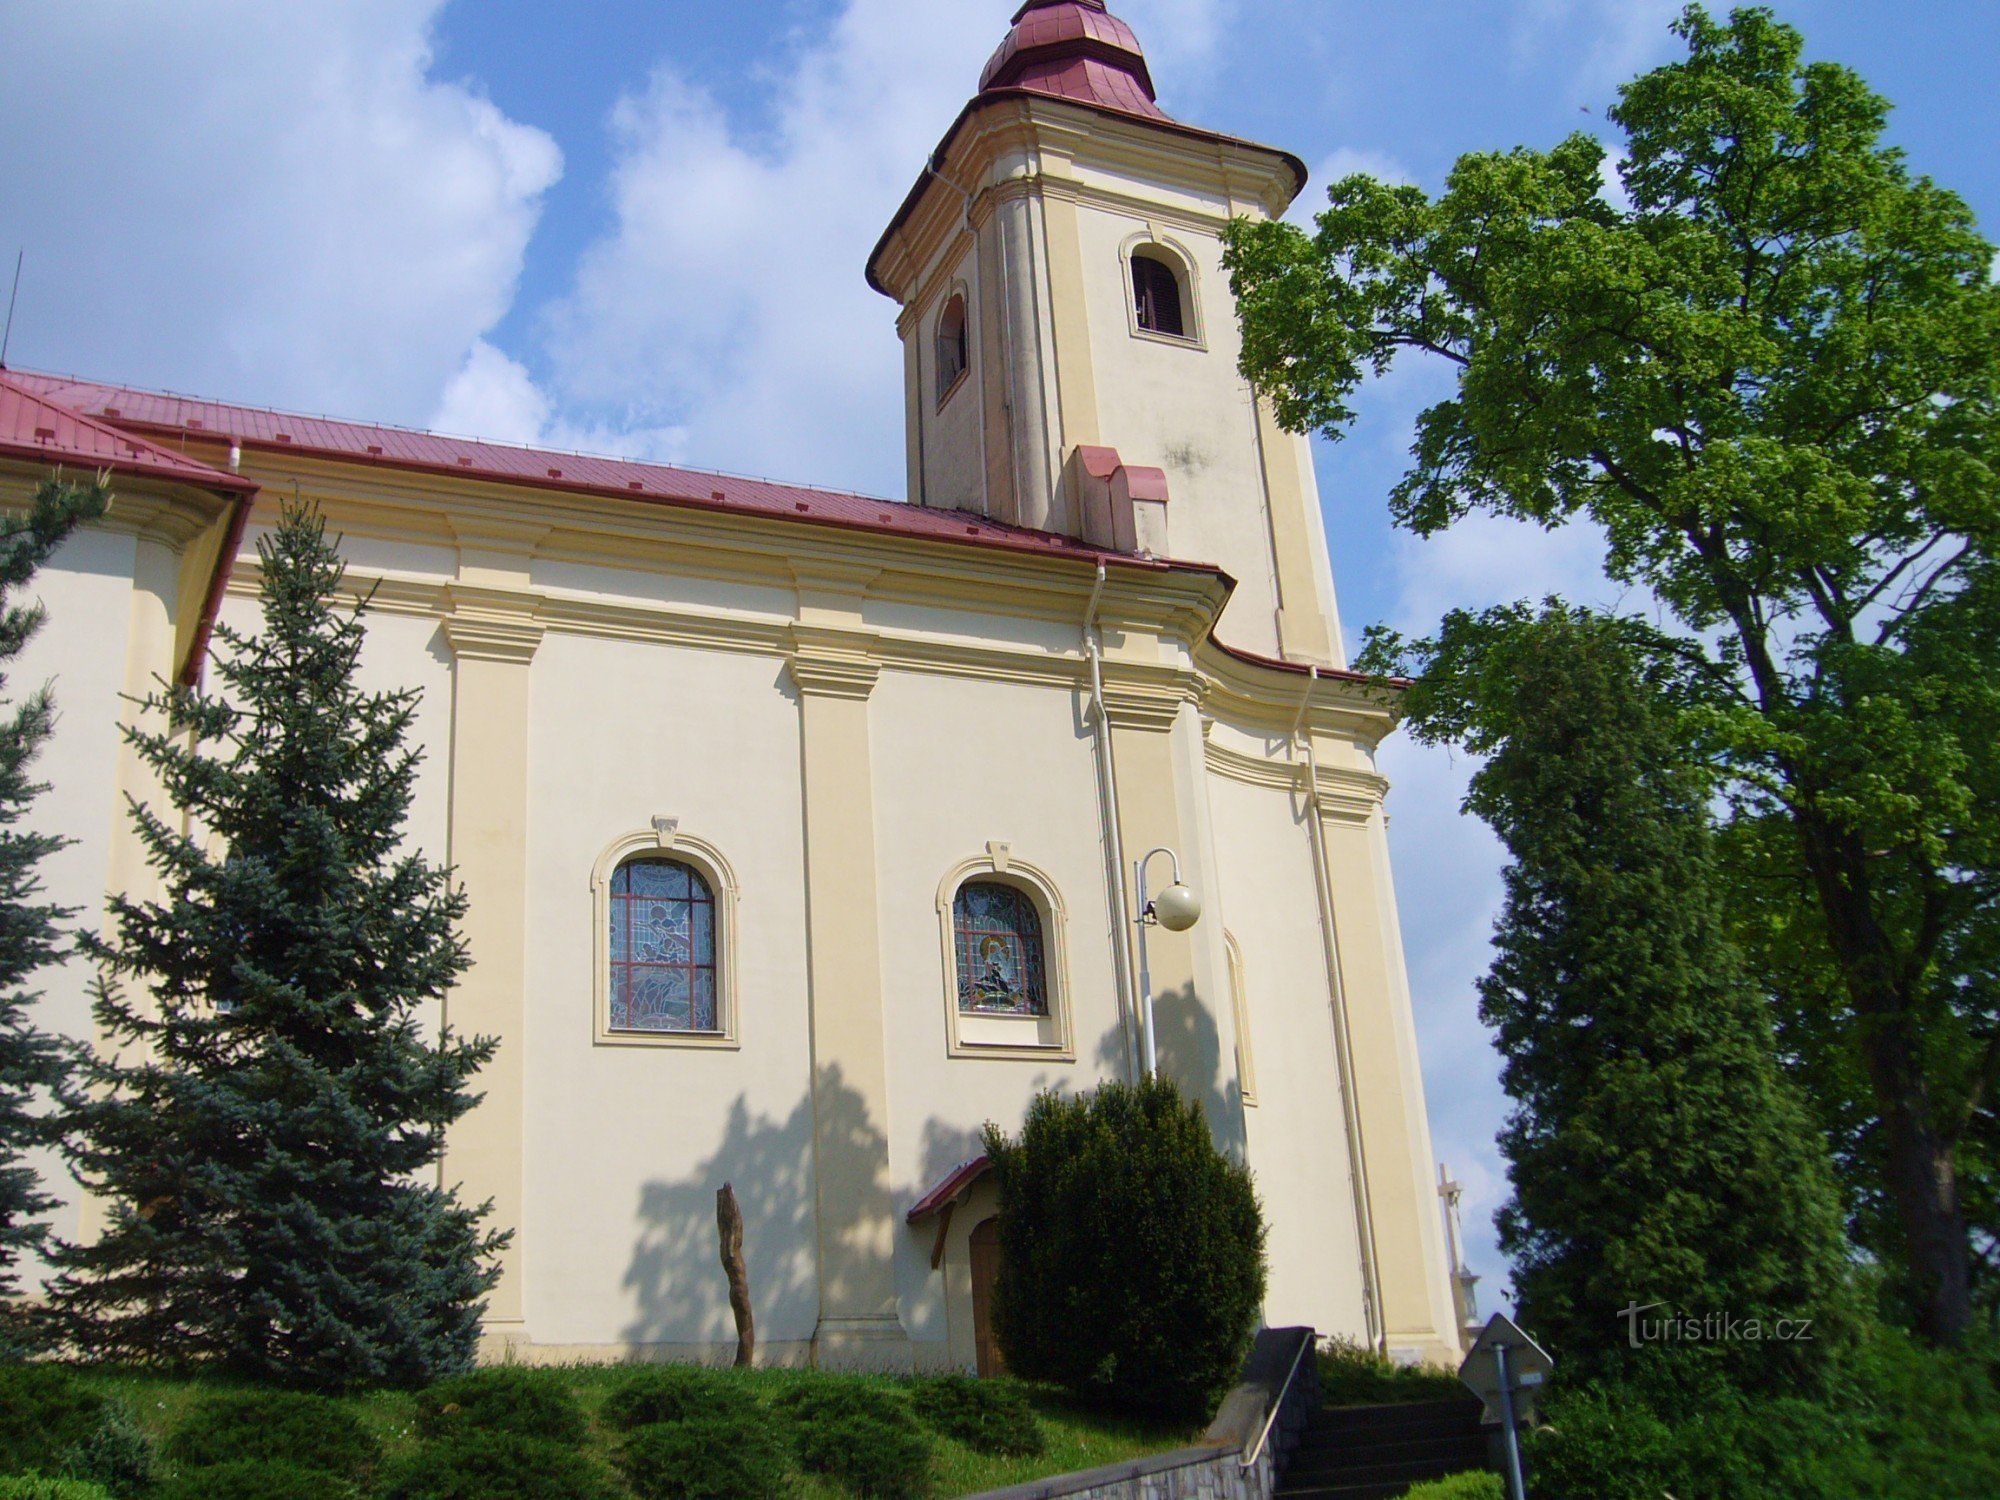 Plesná - Szent István-templom. Jakub